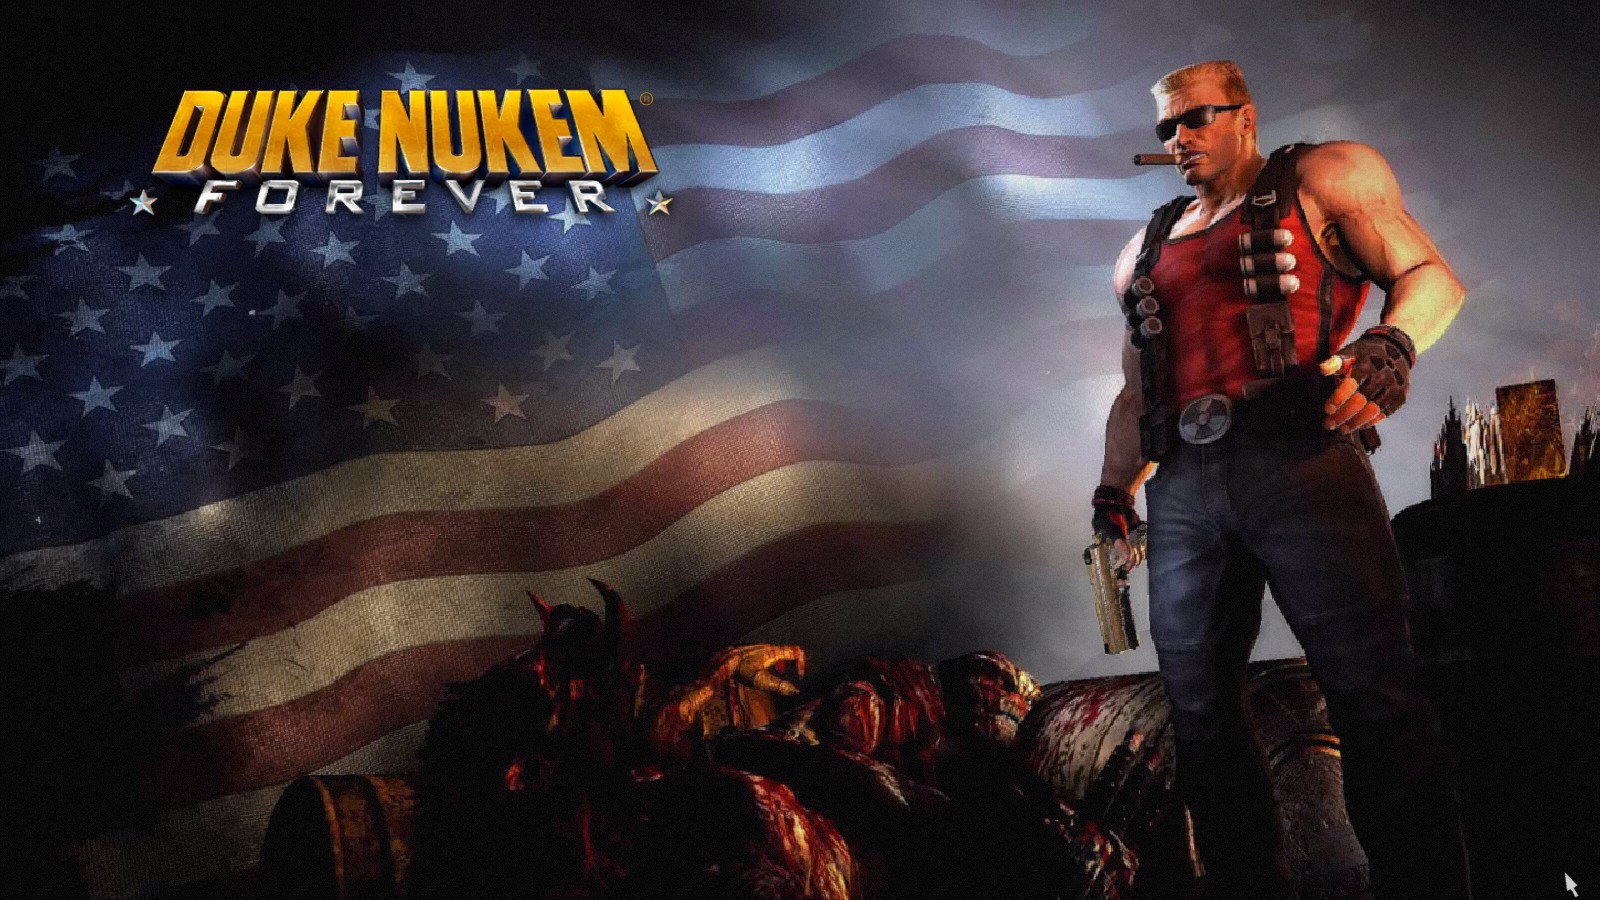 Pc Game Review Duke Nukem Forever Images, Photos, Reviews